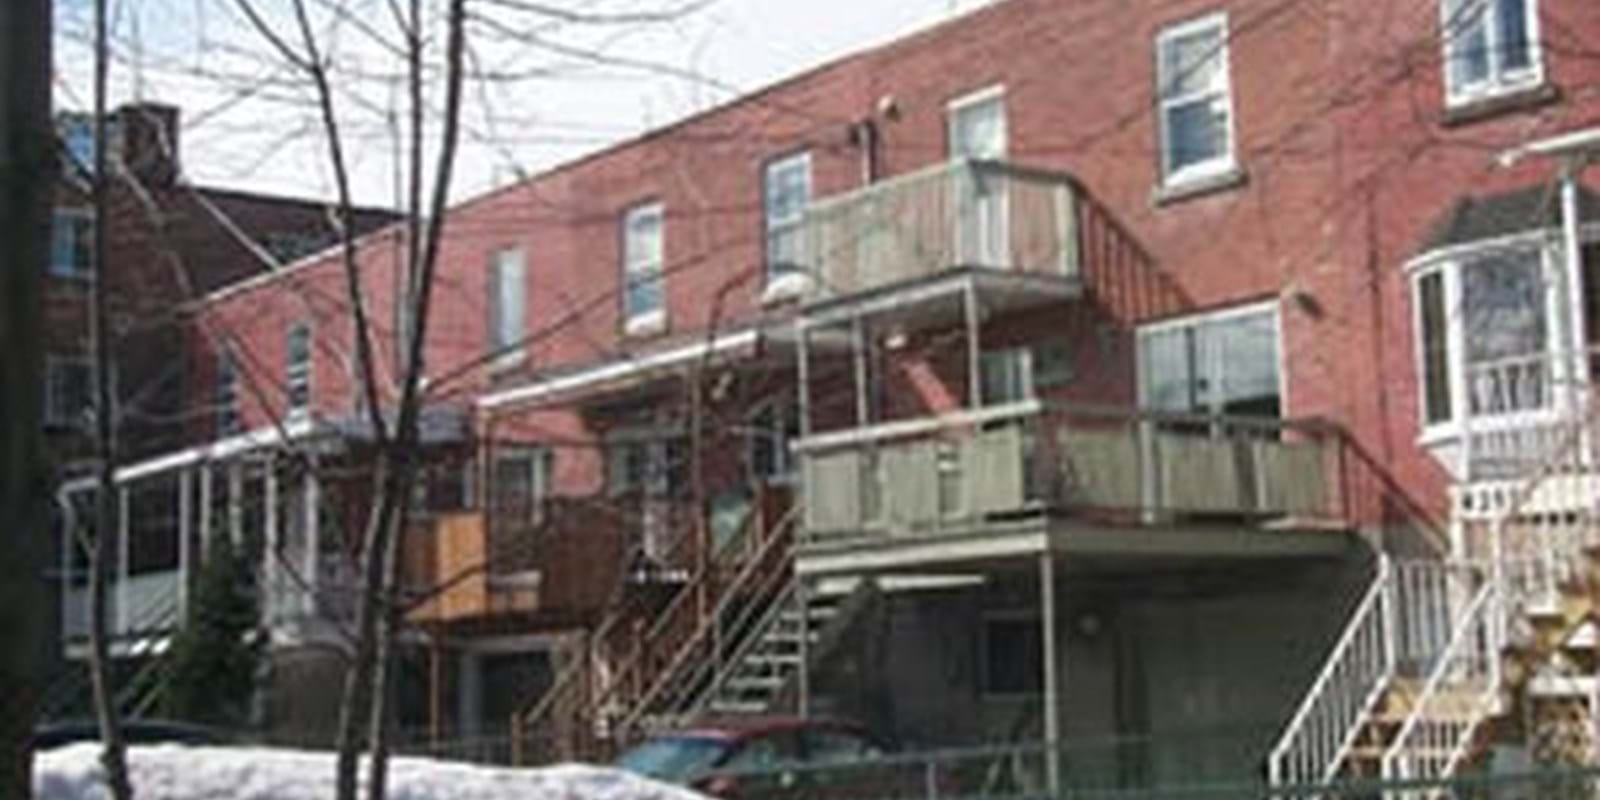 Le prix des propriétés augmente mais les ventes diminuent dans le Grand Montréal